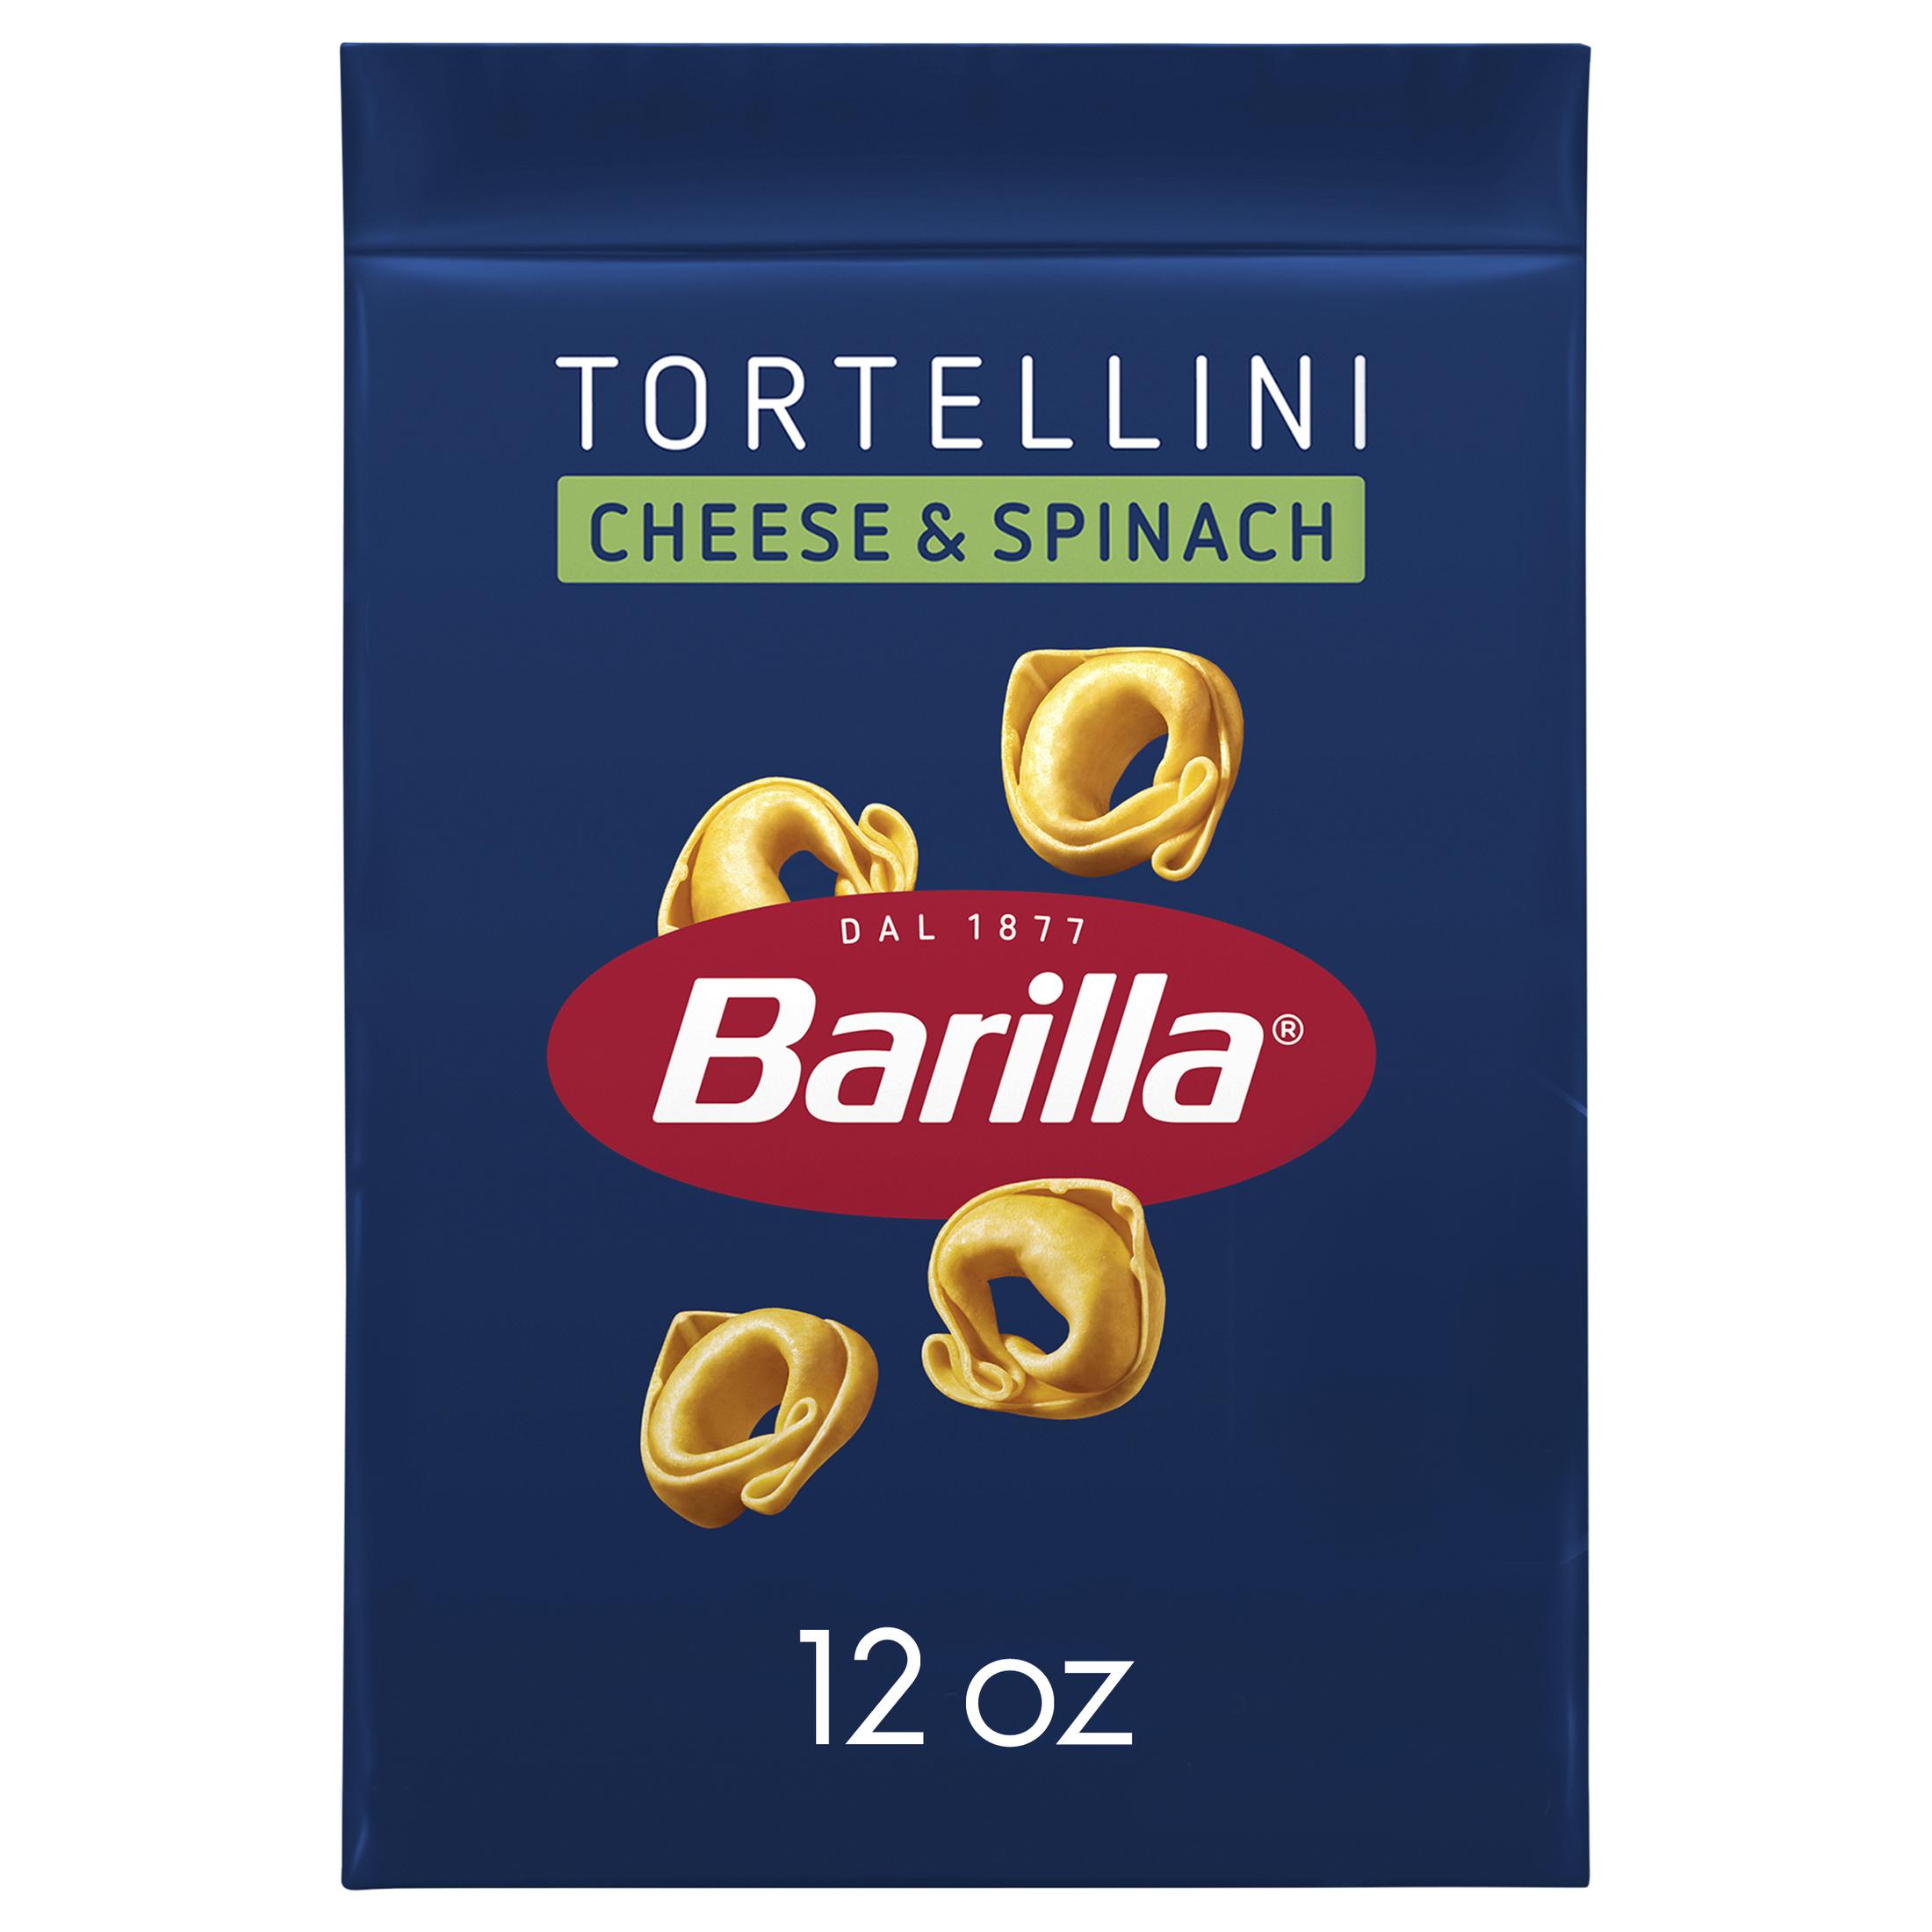 Barilla Classic Non-GMO, Filled Cheese and Spinach Tortellini Pasta, 12 oz - image 1 of 8